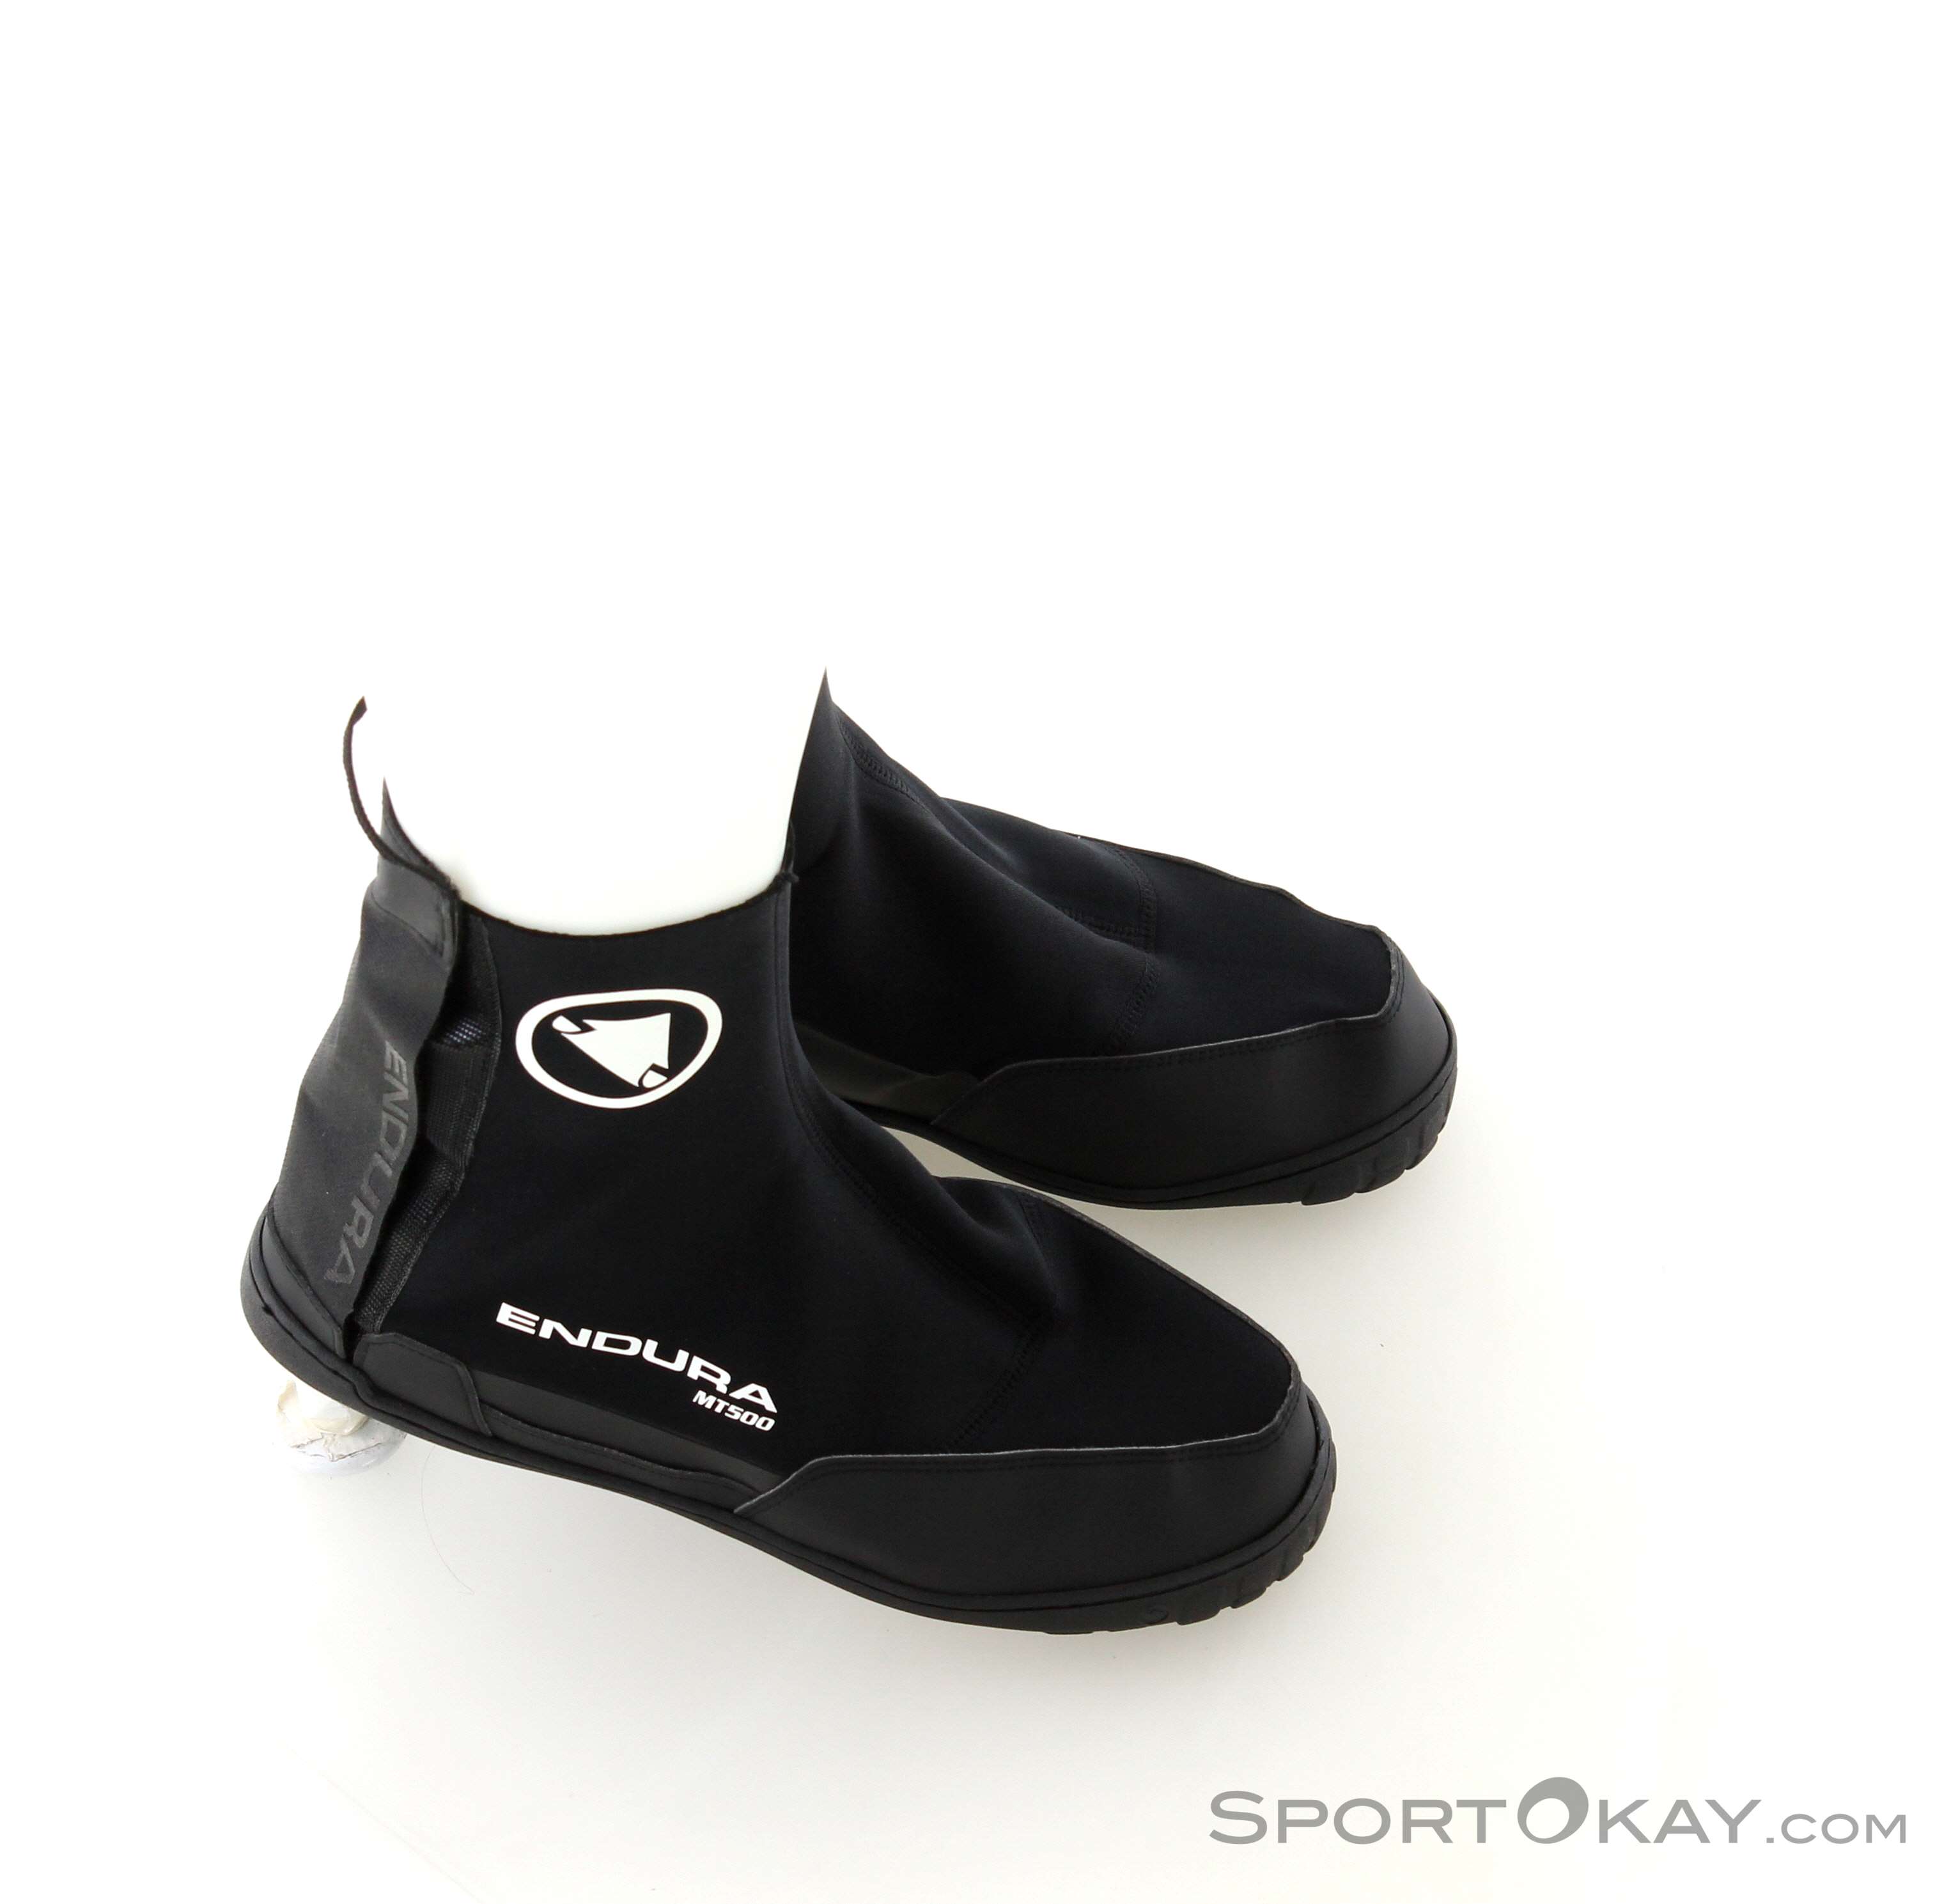 Endura e1154bkxlxxl couvre chaussure mt500 plus noir impermeable tail